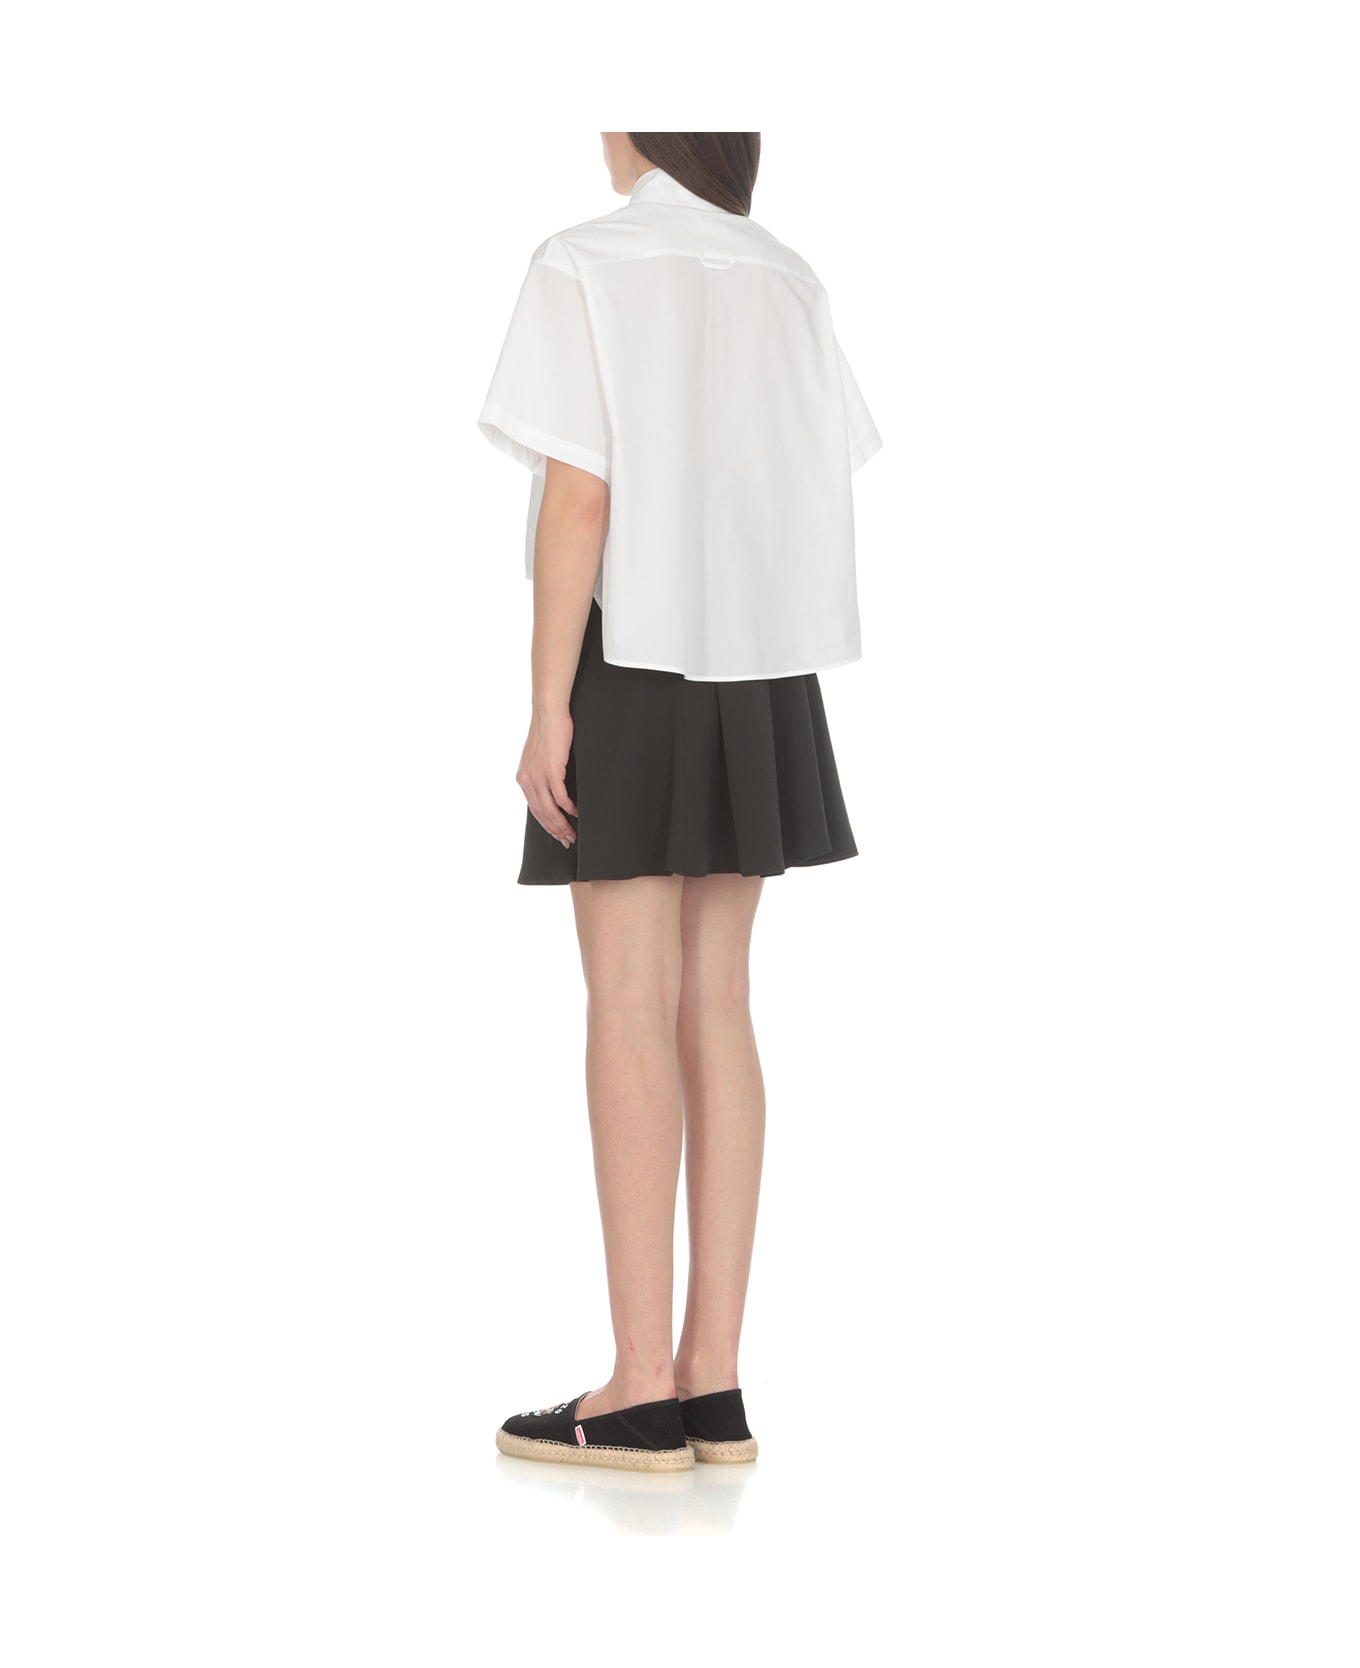 Kenzo Boke 2.0 Cropped Shirt - White シャツ